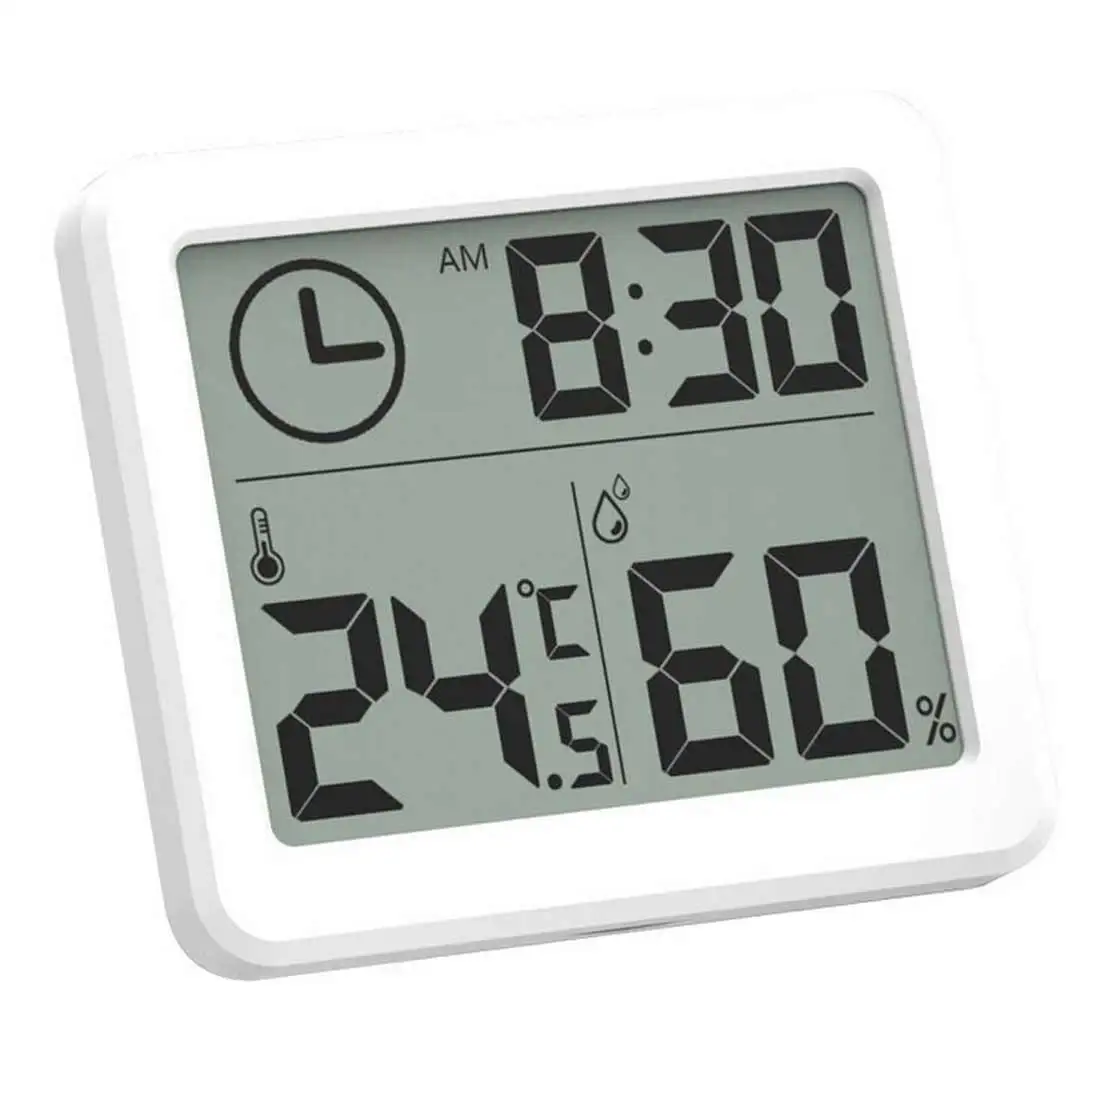 

Цифровой термометр-гигрометр, многофункциональные автоматические электронные часы с монитором температуры и влажности, ЖК-экран 3,2 дюйма